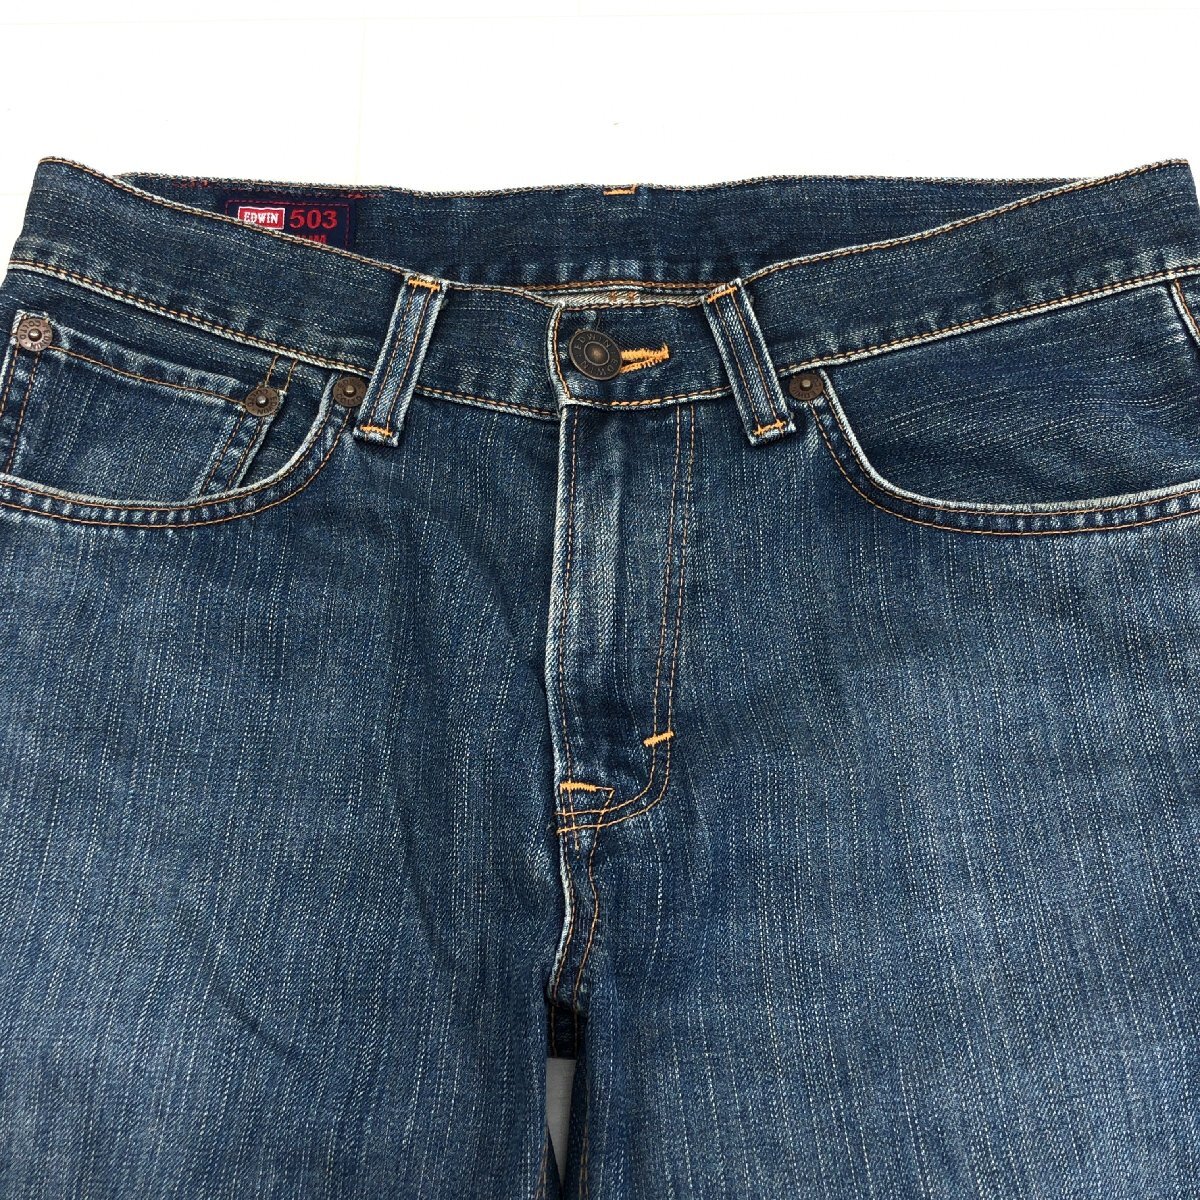 *EDWIN PREMIUM Edwin 503 USED обработка кожаный салон chi Denim брюки 32 w84 темно-синий индиго джинсы телячья кожа patch сделано в Японии внутренний стандартный товар джентльмен 